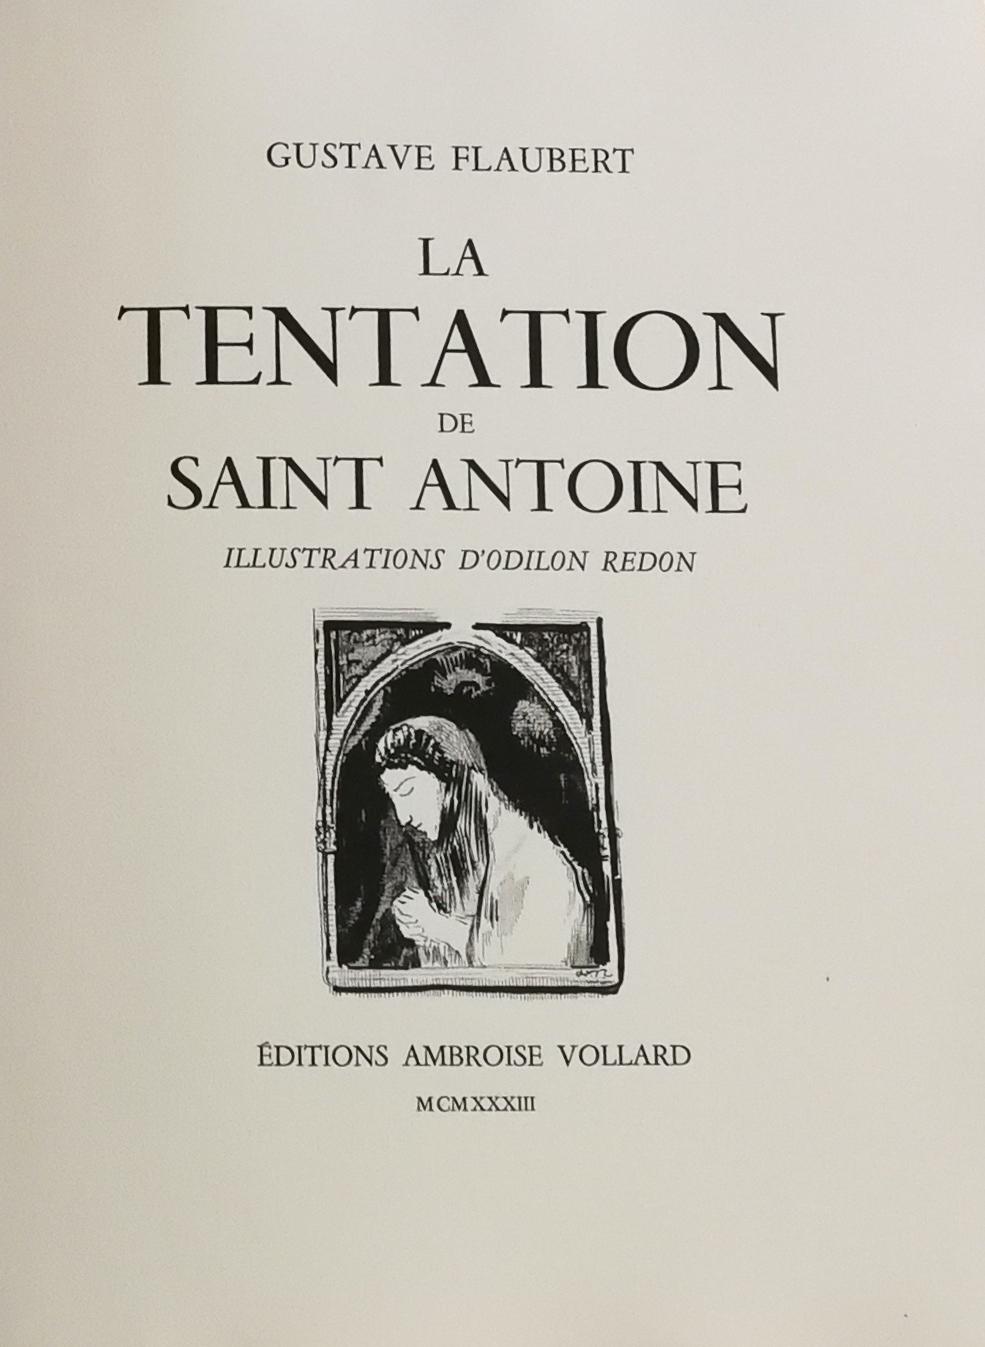 La Tentation de Saint-Antoine, livre illustré de Gustave Flaubert par O. Redon